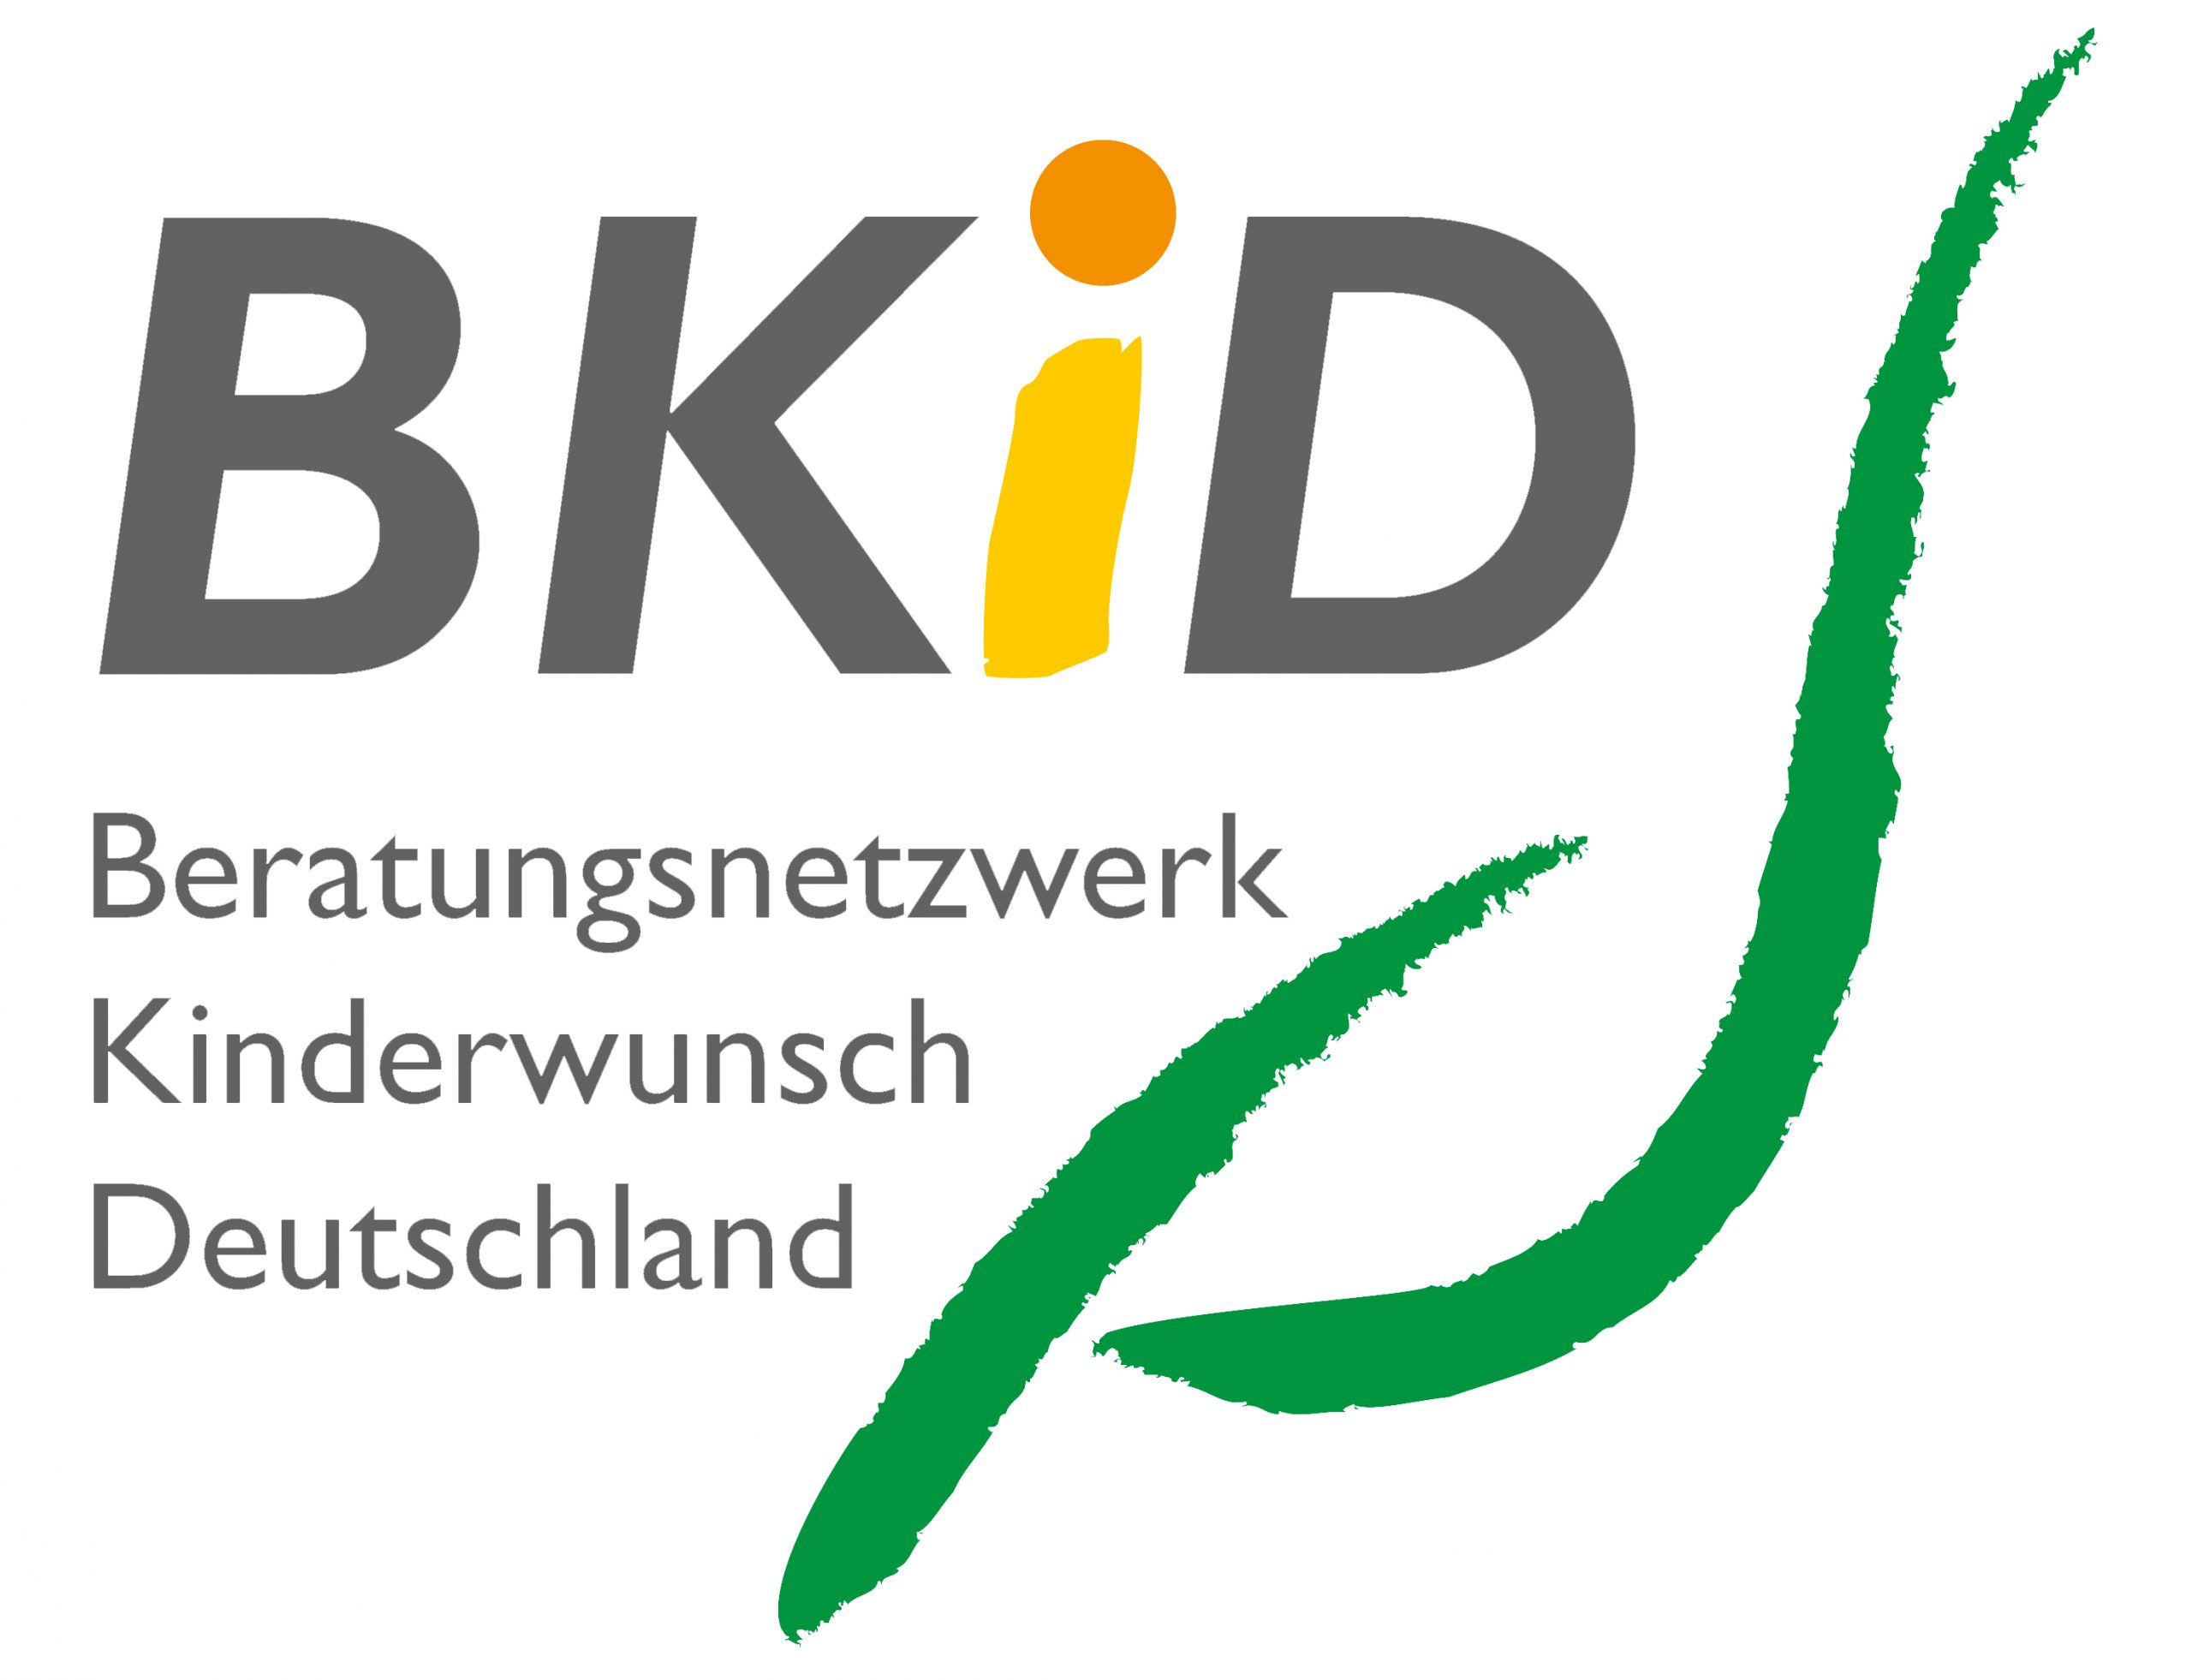 Deutsche Gesellschaft für Kinderwunschberatung - BKiD